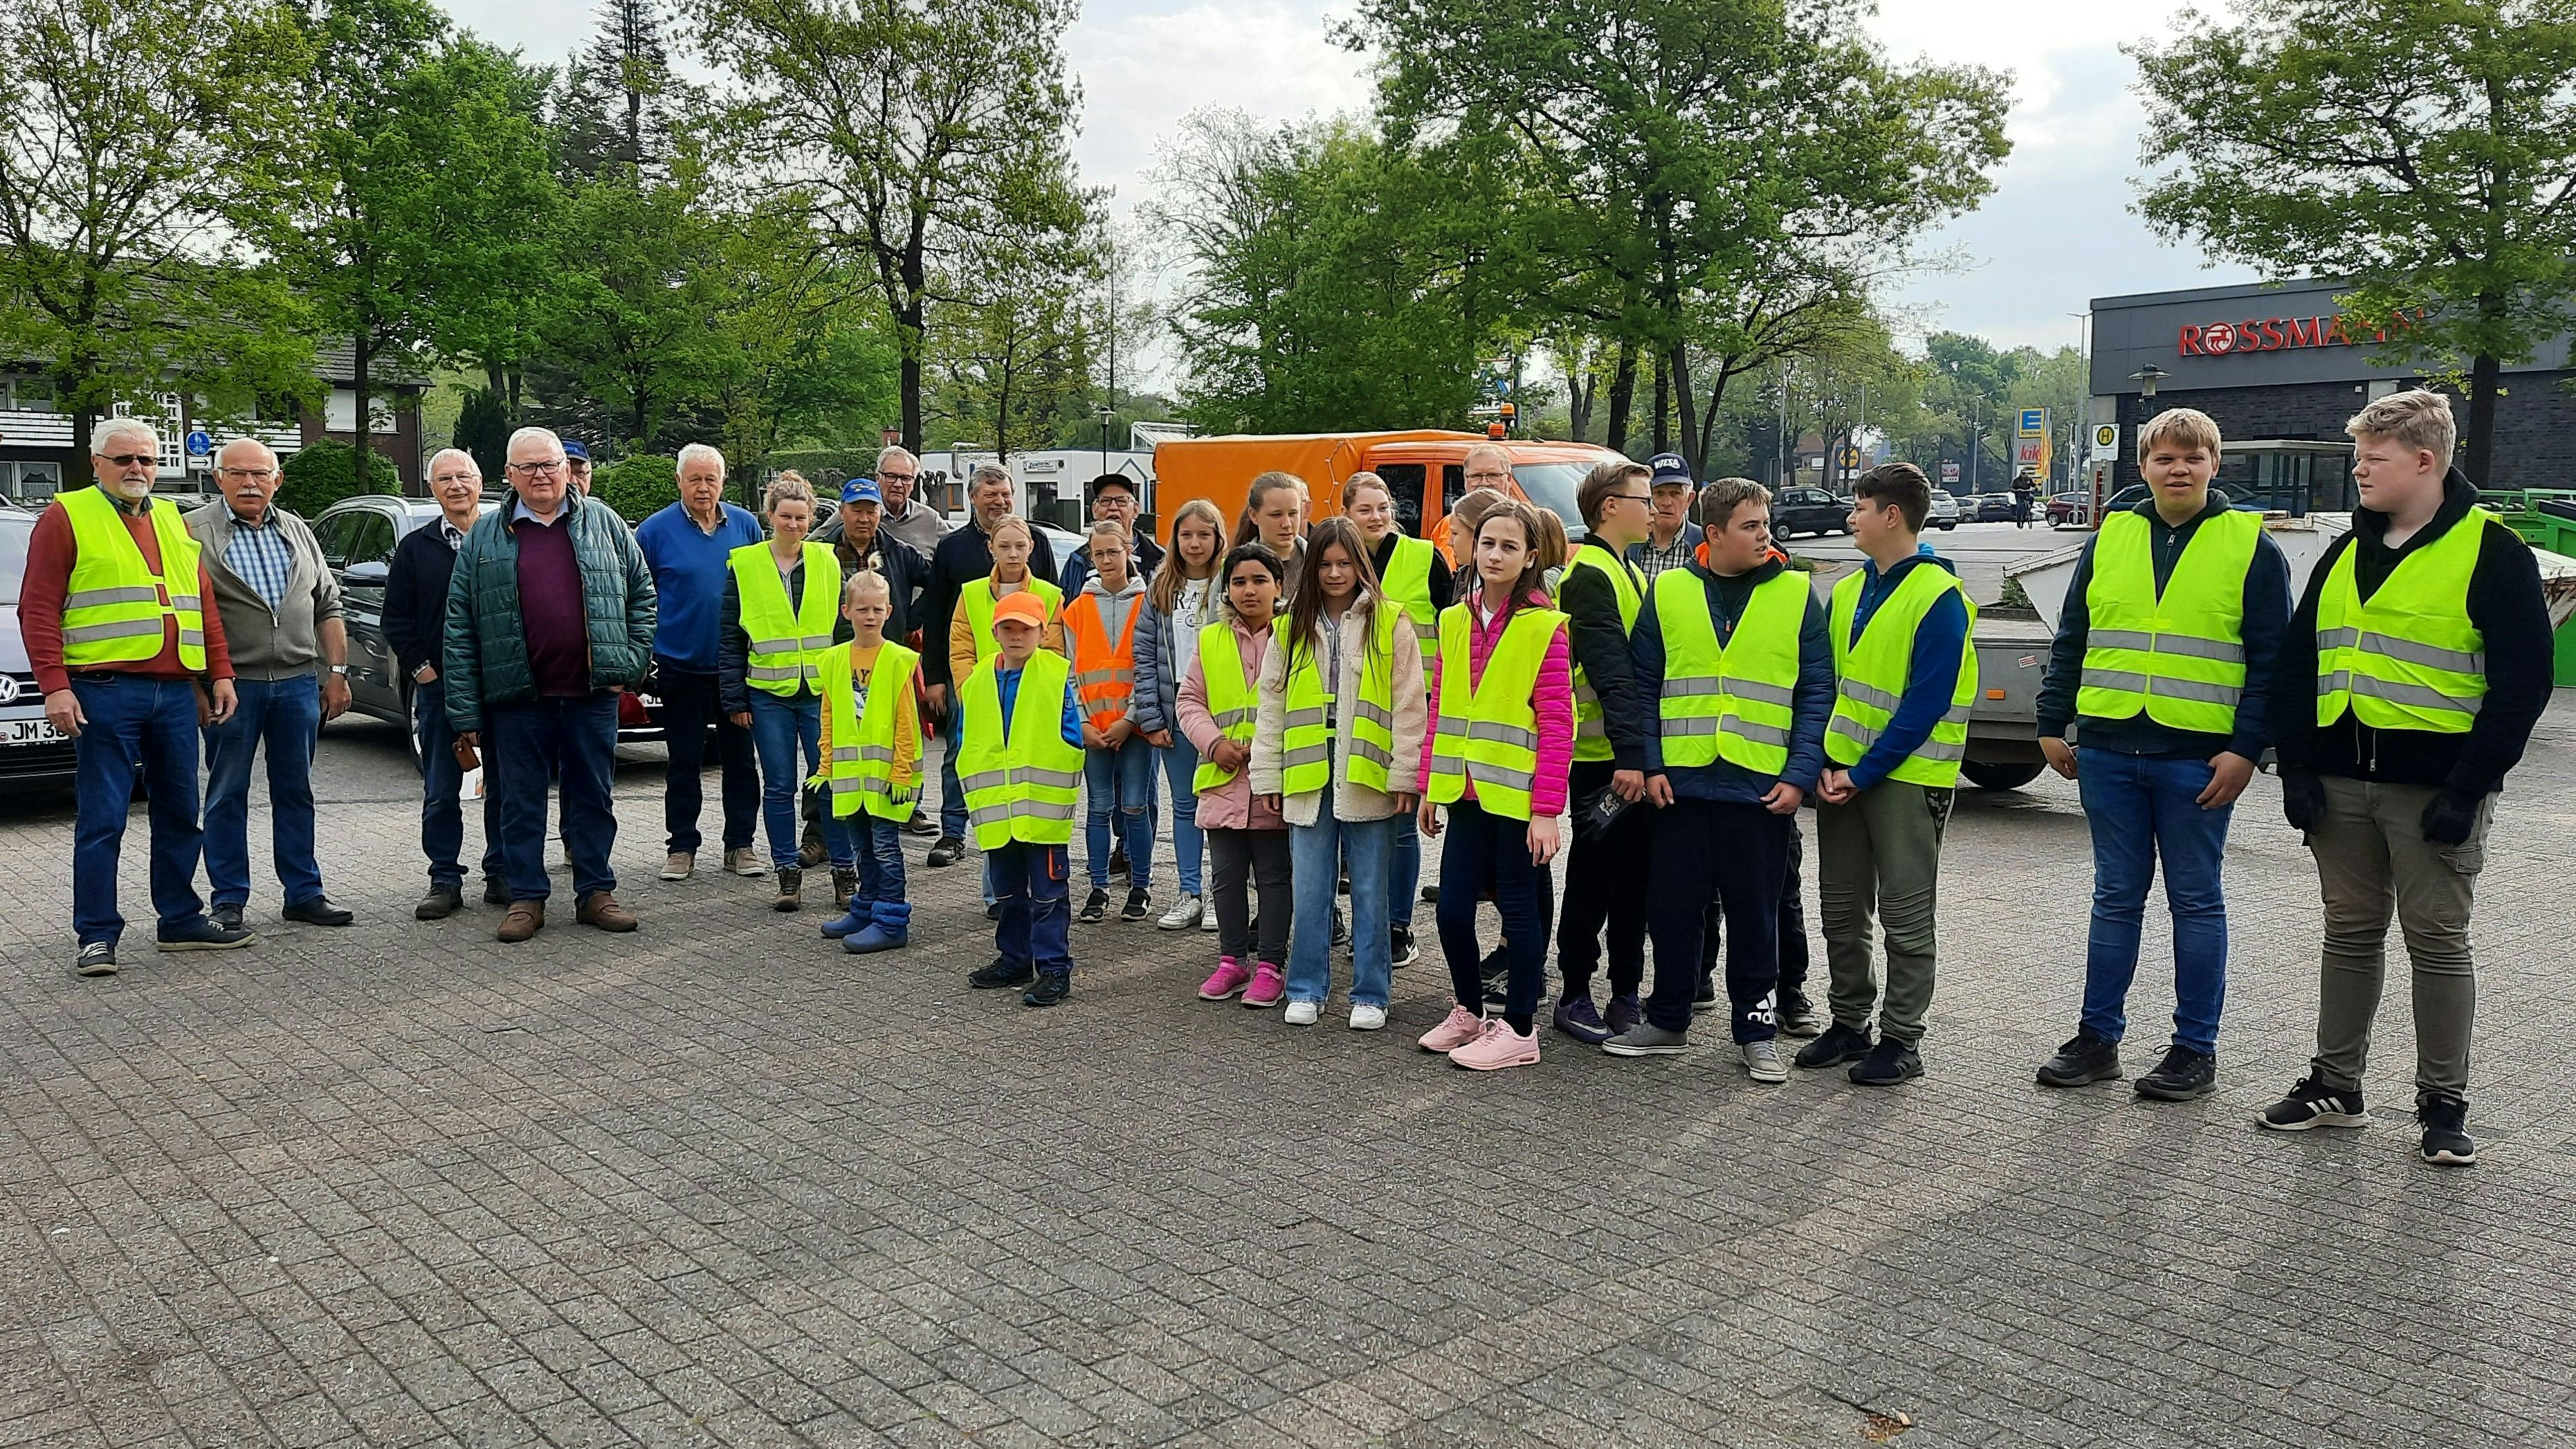 Bereit für den Einsatz: Diese Gruppe der freiwilligen Helfer startete zur Umweltaktion im Bereich der Supermärkte an der Cloppenburger Straße. Foto: Jakoby